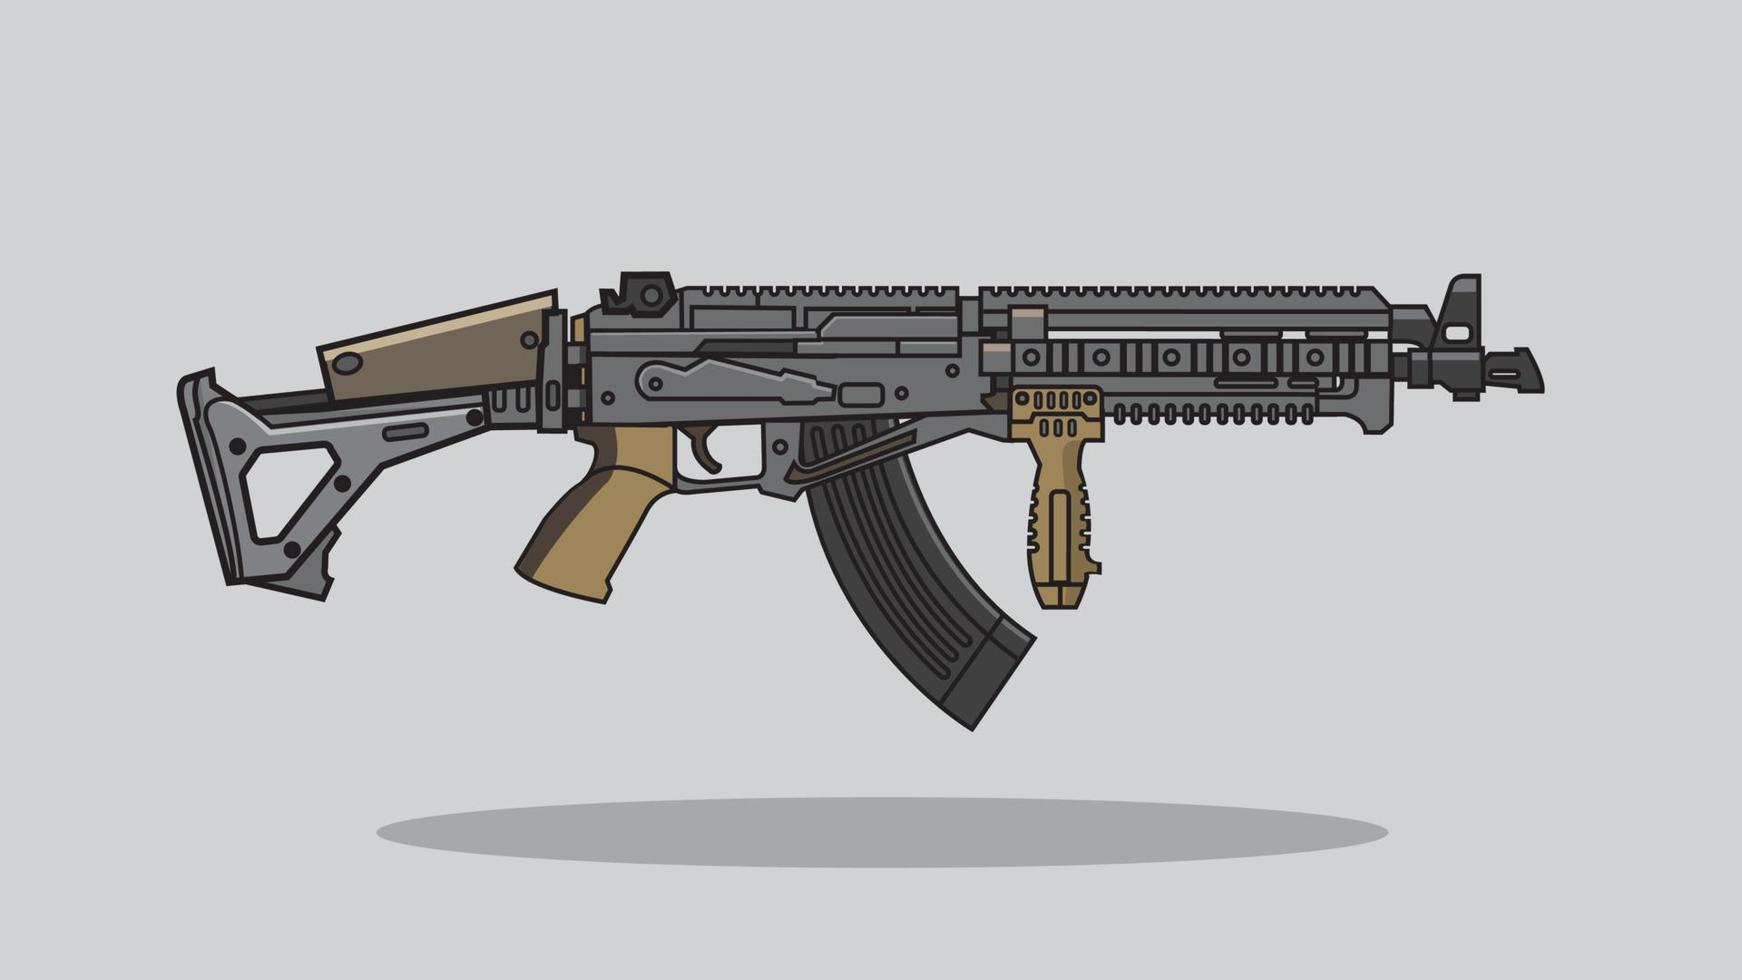 moderne geweervuurwapens, schietgeweer, wapen vectorillustratie. geweer illustratie, militair concept vector